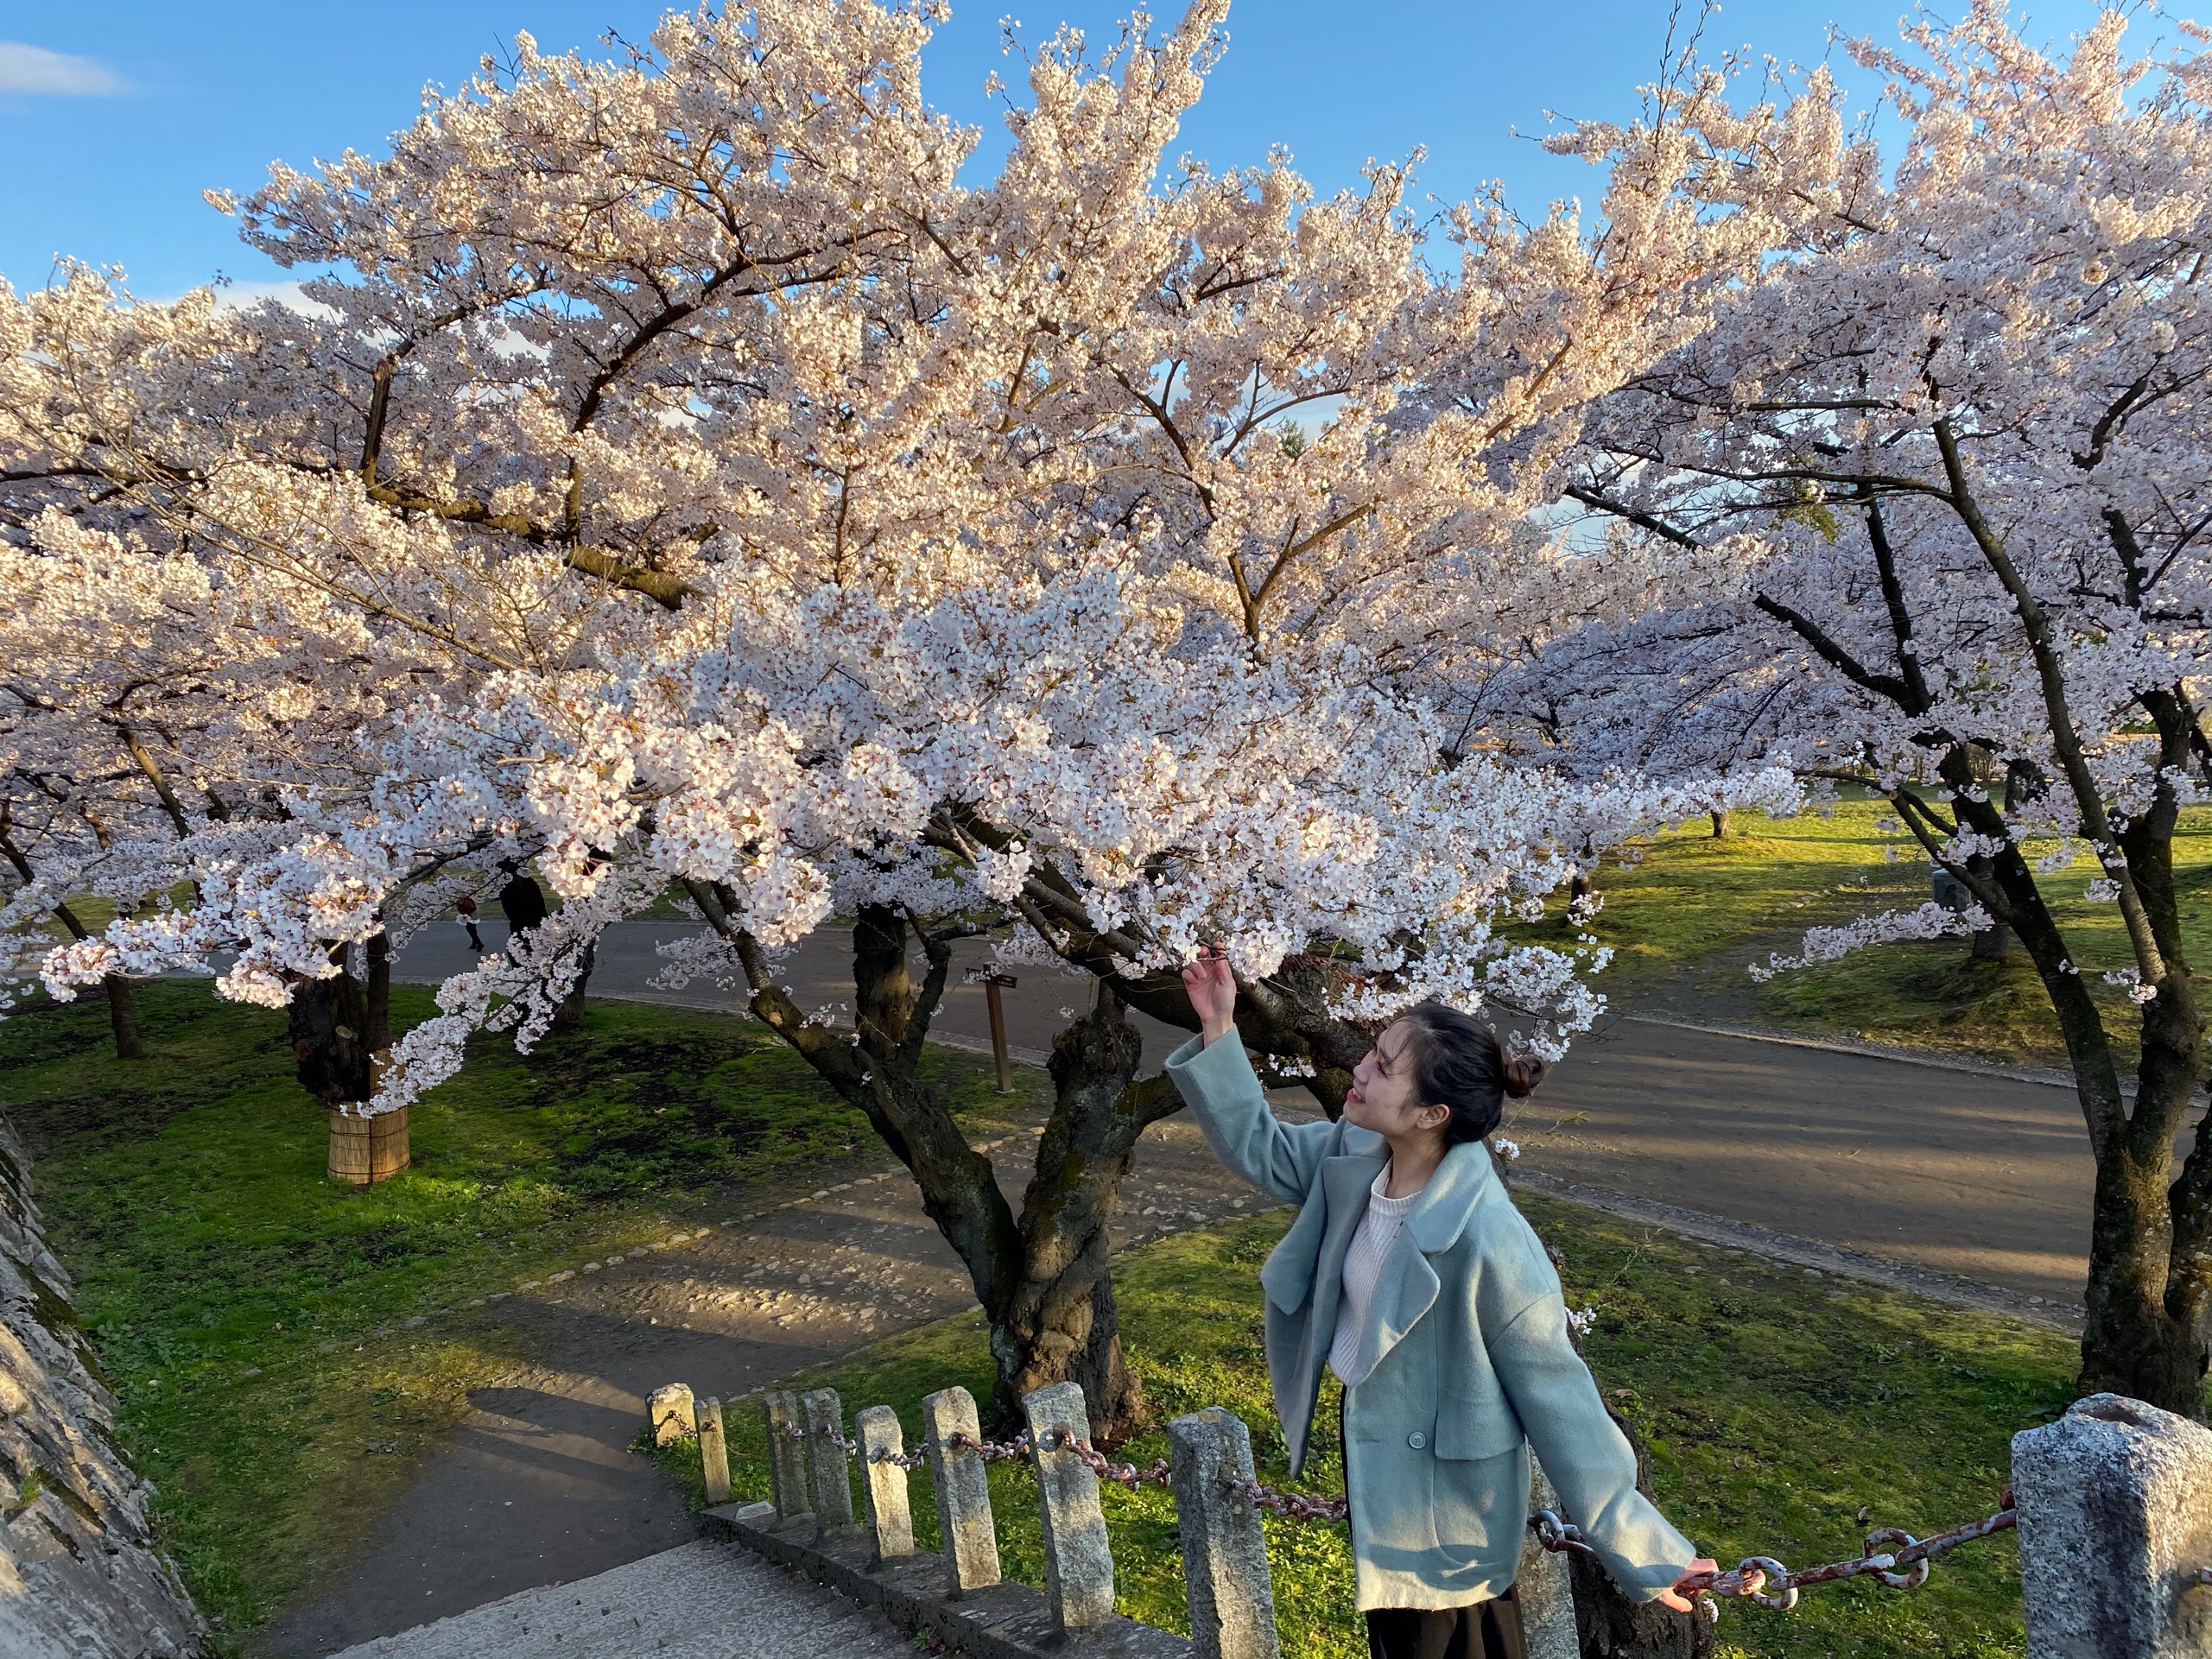 Choáng ngợp cảnh sắc hoa anh đào khoe sắc tuyệt đẹp như cổ tích ở Nhật Bản - 10